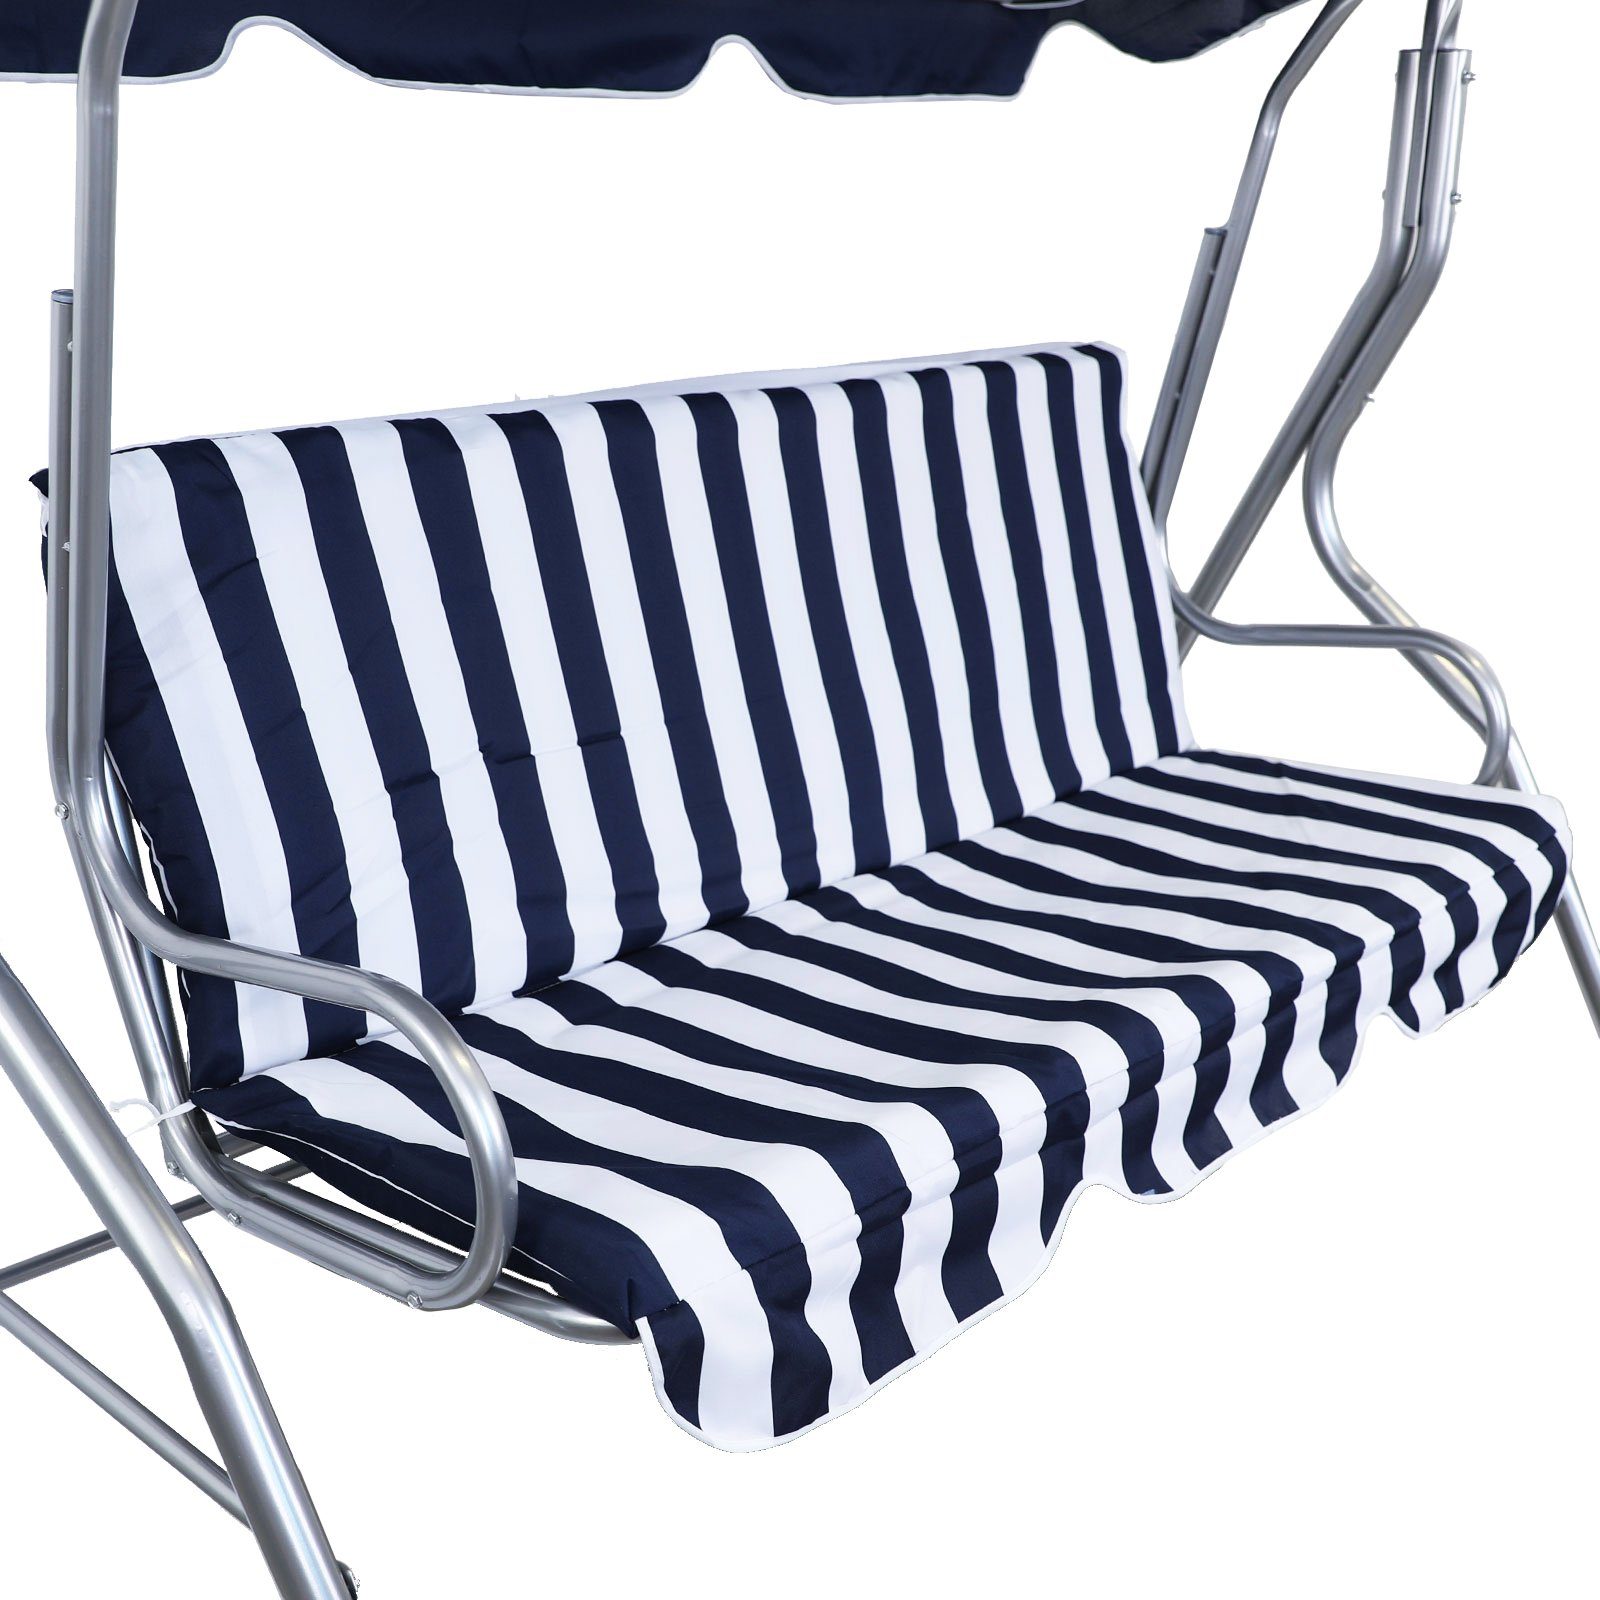 RAMROXX Hollywoodschaukel »Hollywoodschaukel Gartenschaukel Outdoor Indoor  3 Sitzer Blau Weiß Silber«, 3-Sitzer, inkl. Polsterung und Sonnendach  online kaufen | OTTO